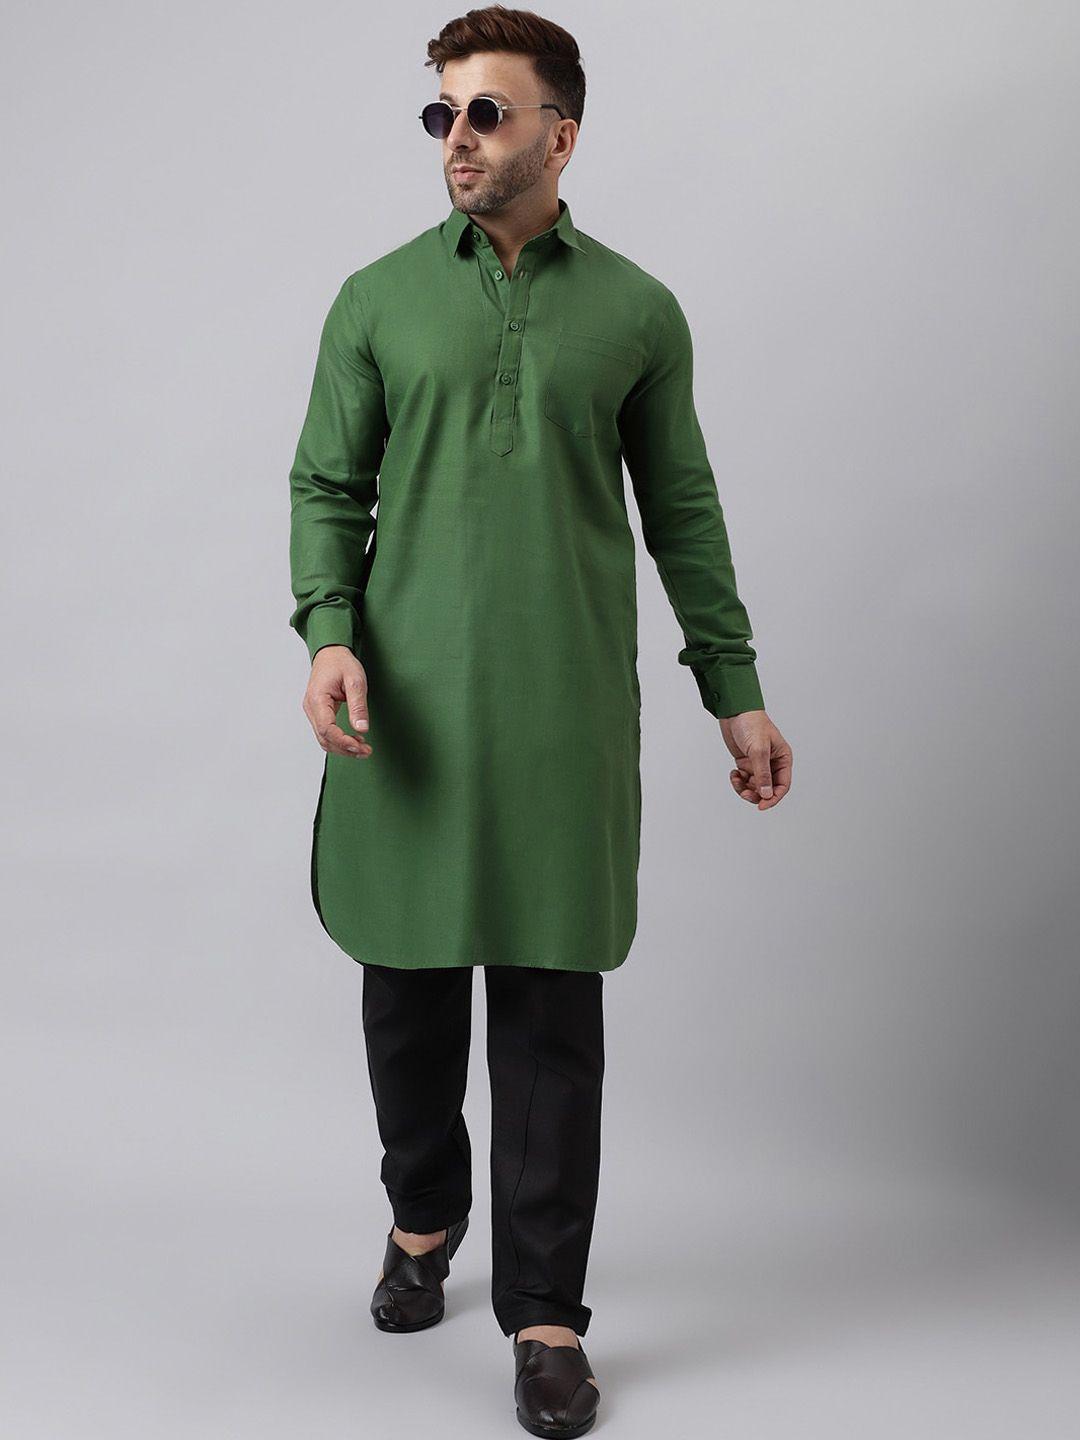 hangup-shirt-collar-kurta-pathani-kurta-with-pyjamas